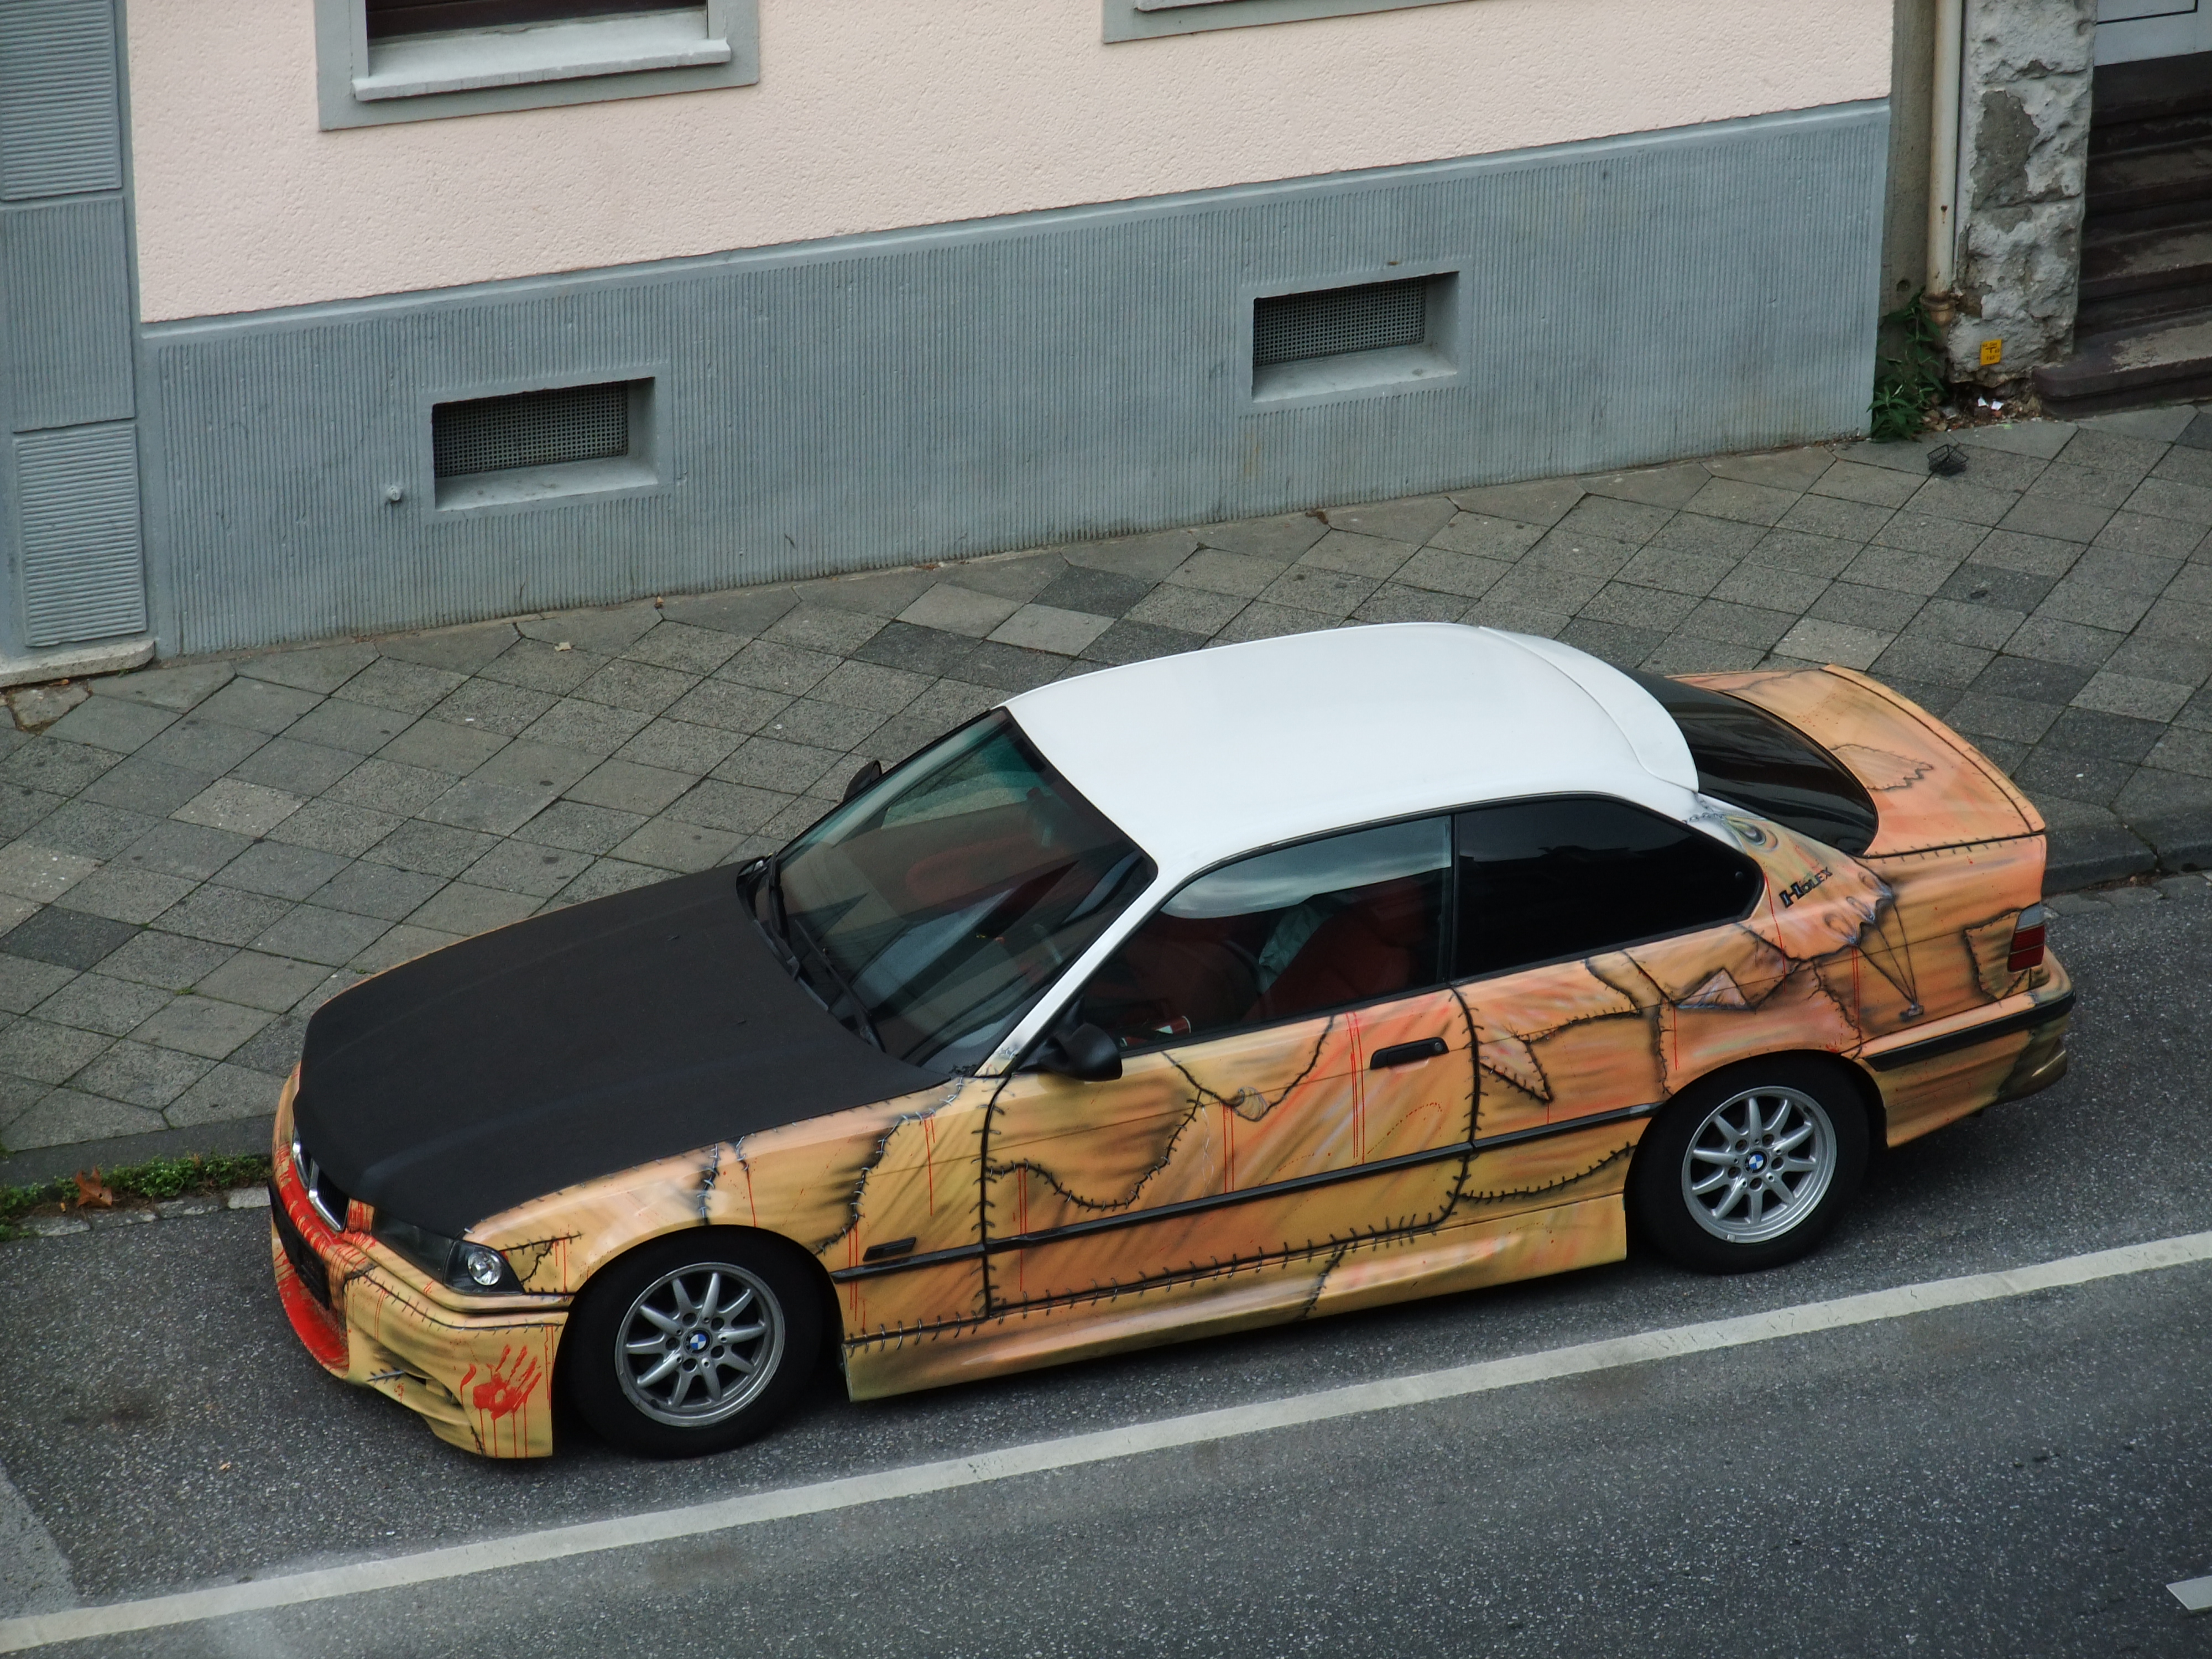 BMW 3er CoupÃ© mit Sonderlackierung | Flickr - Photo Sharing!